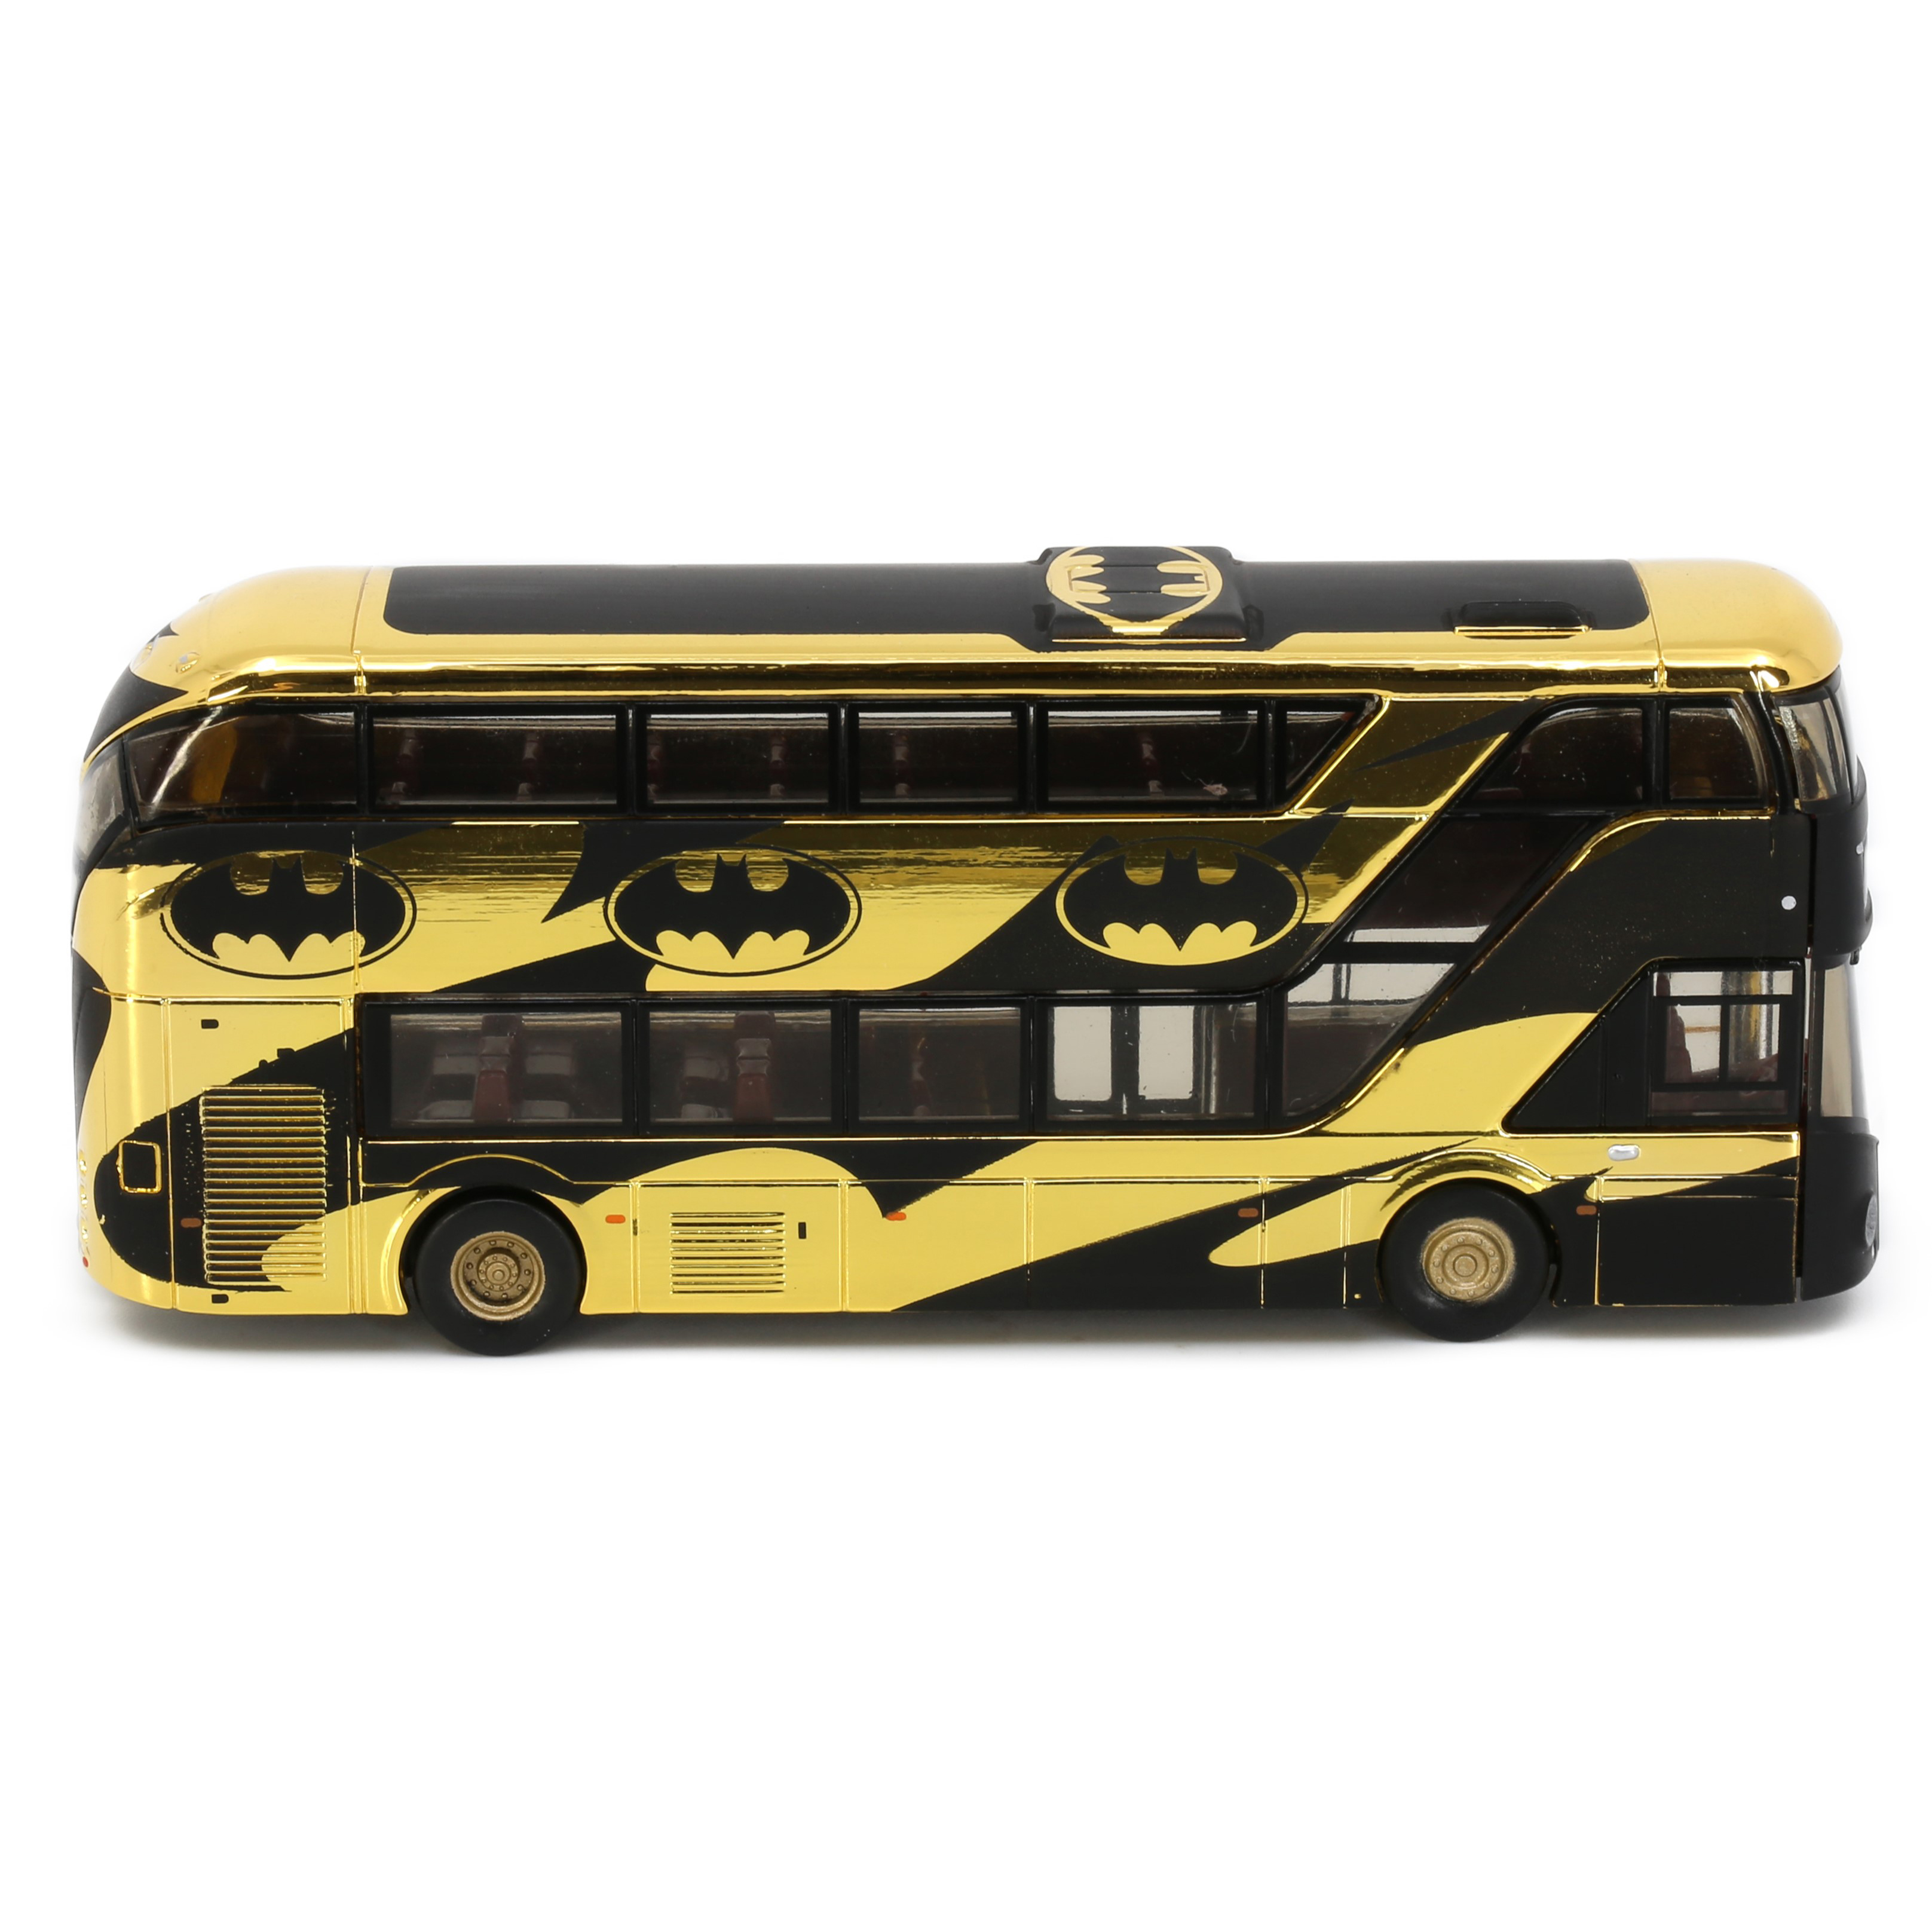 TINY微影城市新伦敦巴士 Batman合金汽车模型玩具收藏摆件-图1